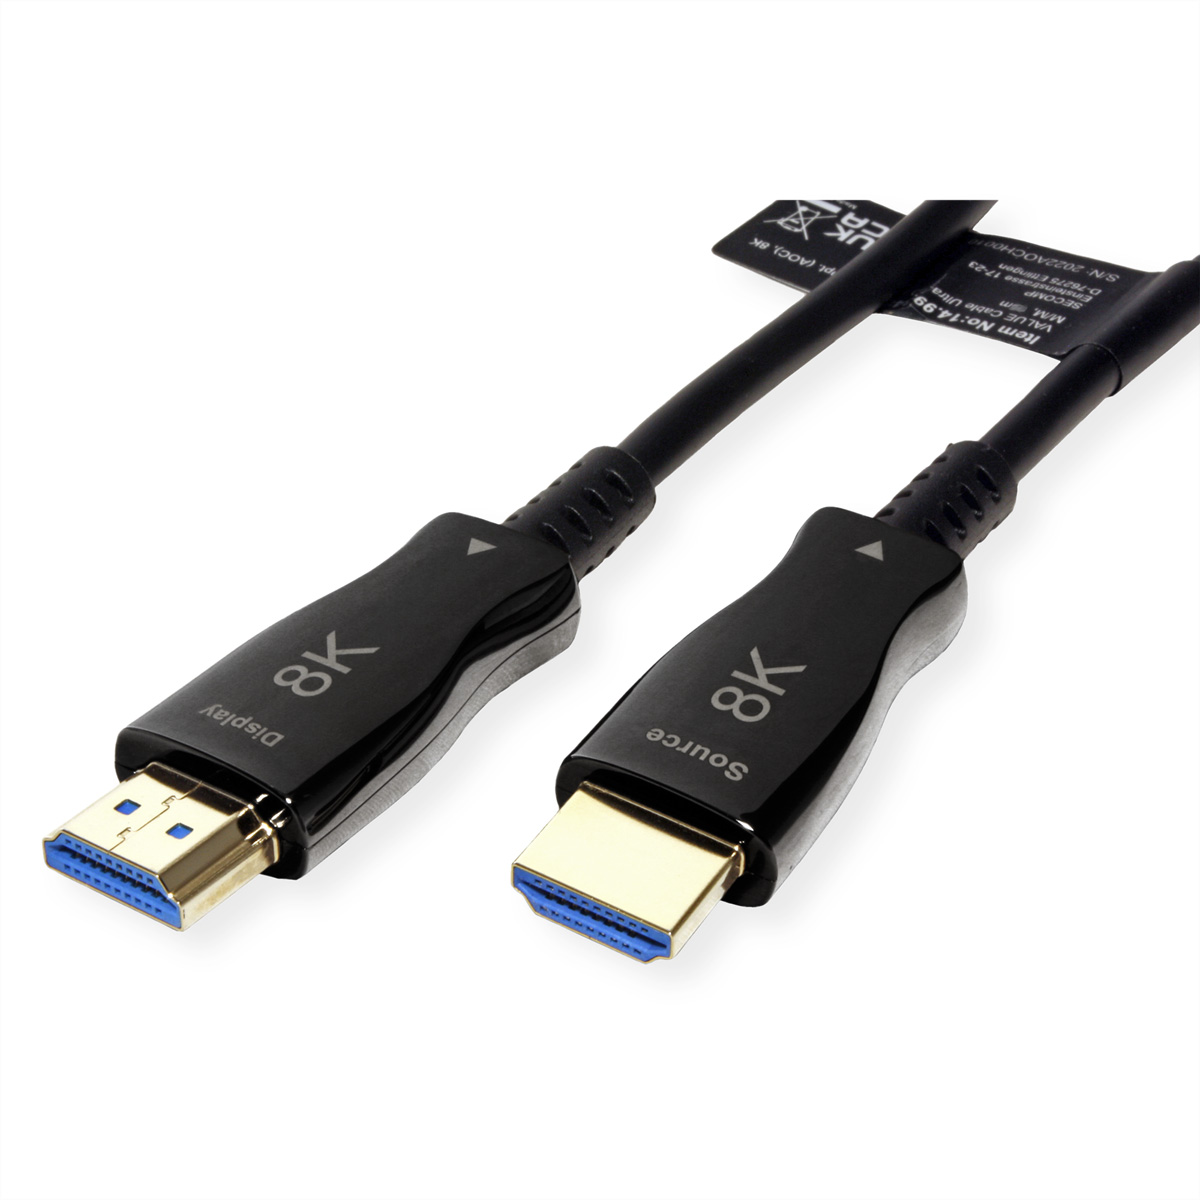 VALUE Ultra HDMI Aktiv Optisches mit Kabel Ethernet HD Kabel 8K Ultra HDMI